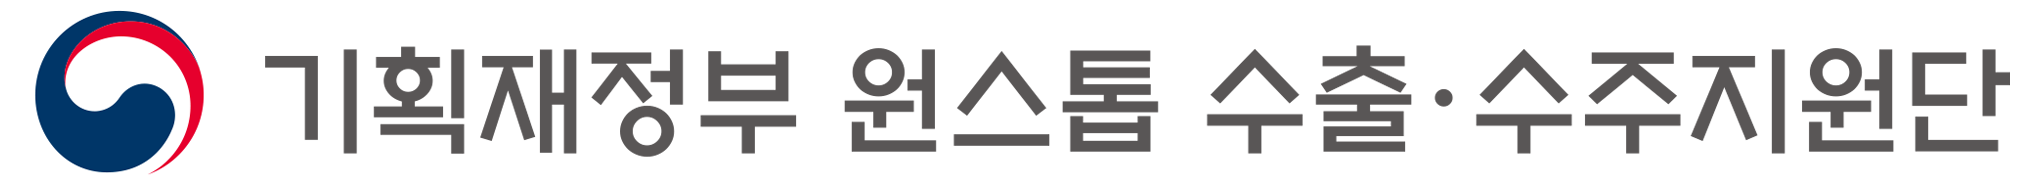 기획재정부 원스톱수출수주지원단 Logo